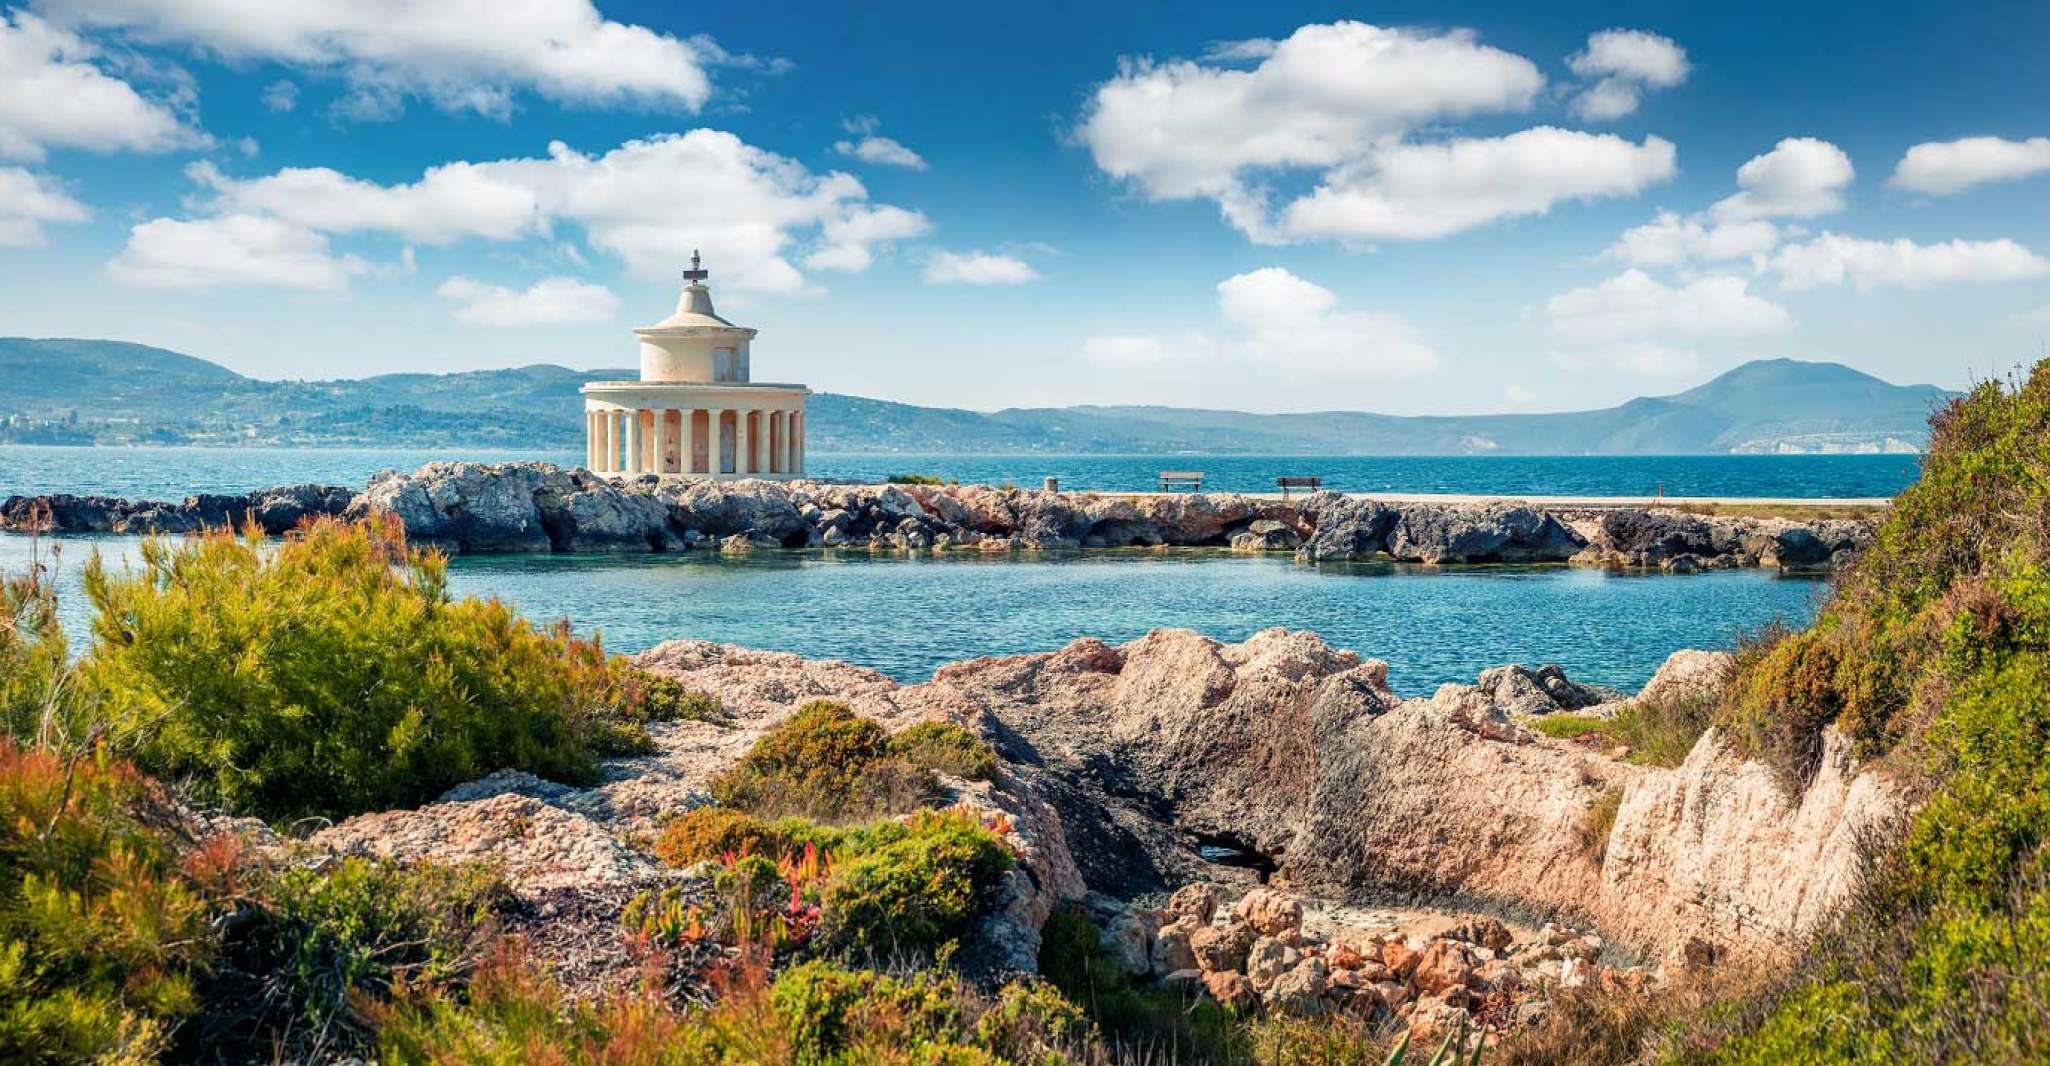 From Argostoli, Kefalonia Shore Excursion Highlights Tour - Housity